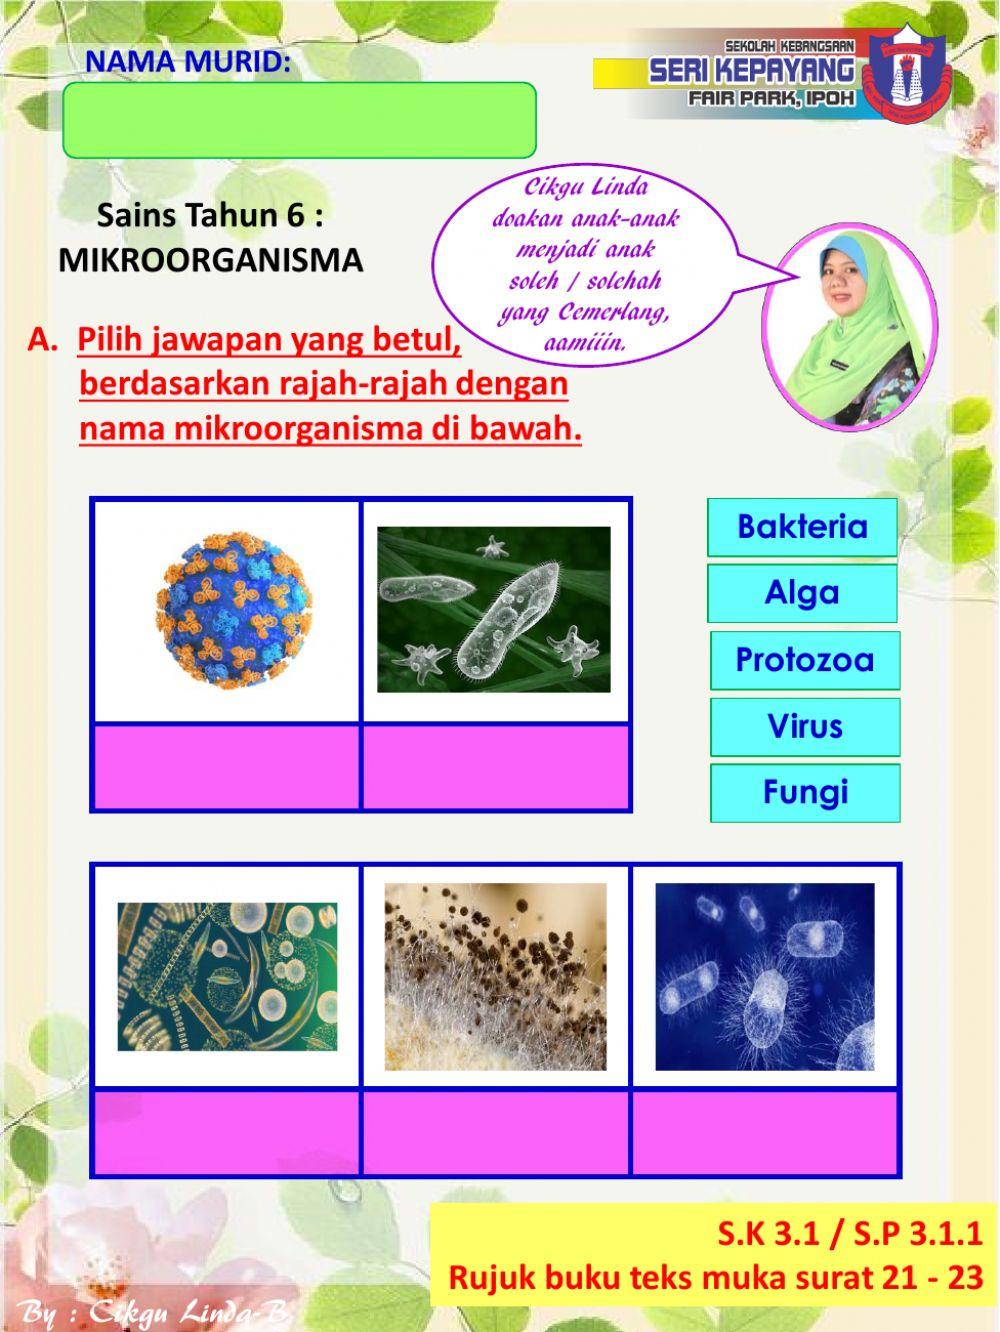 Sains Tahun 6 : Mikroorganisma